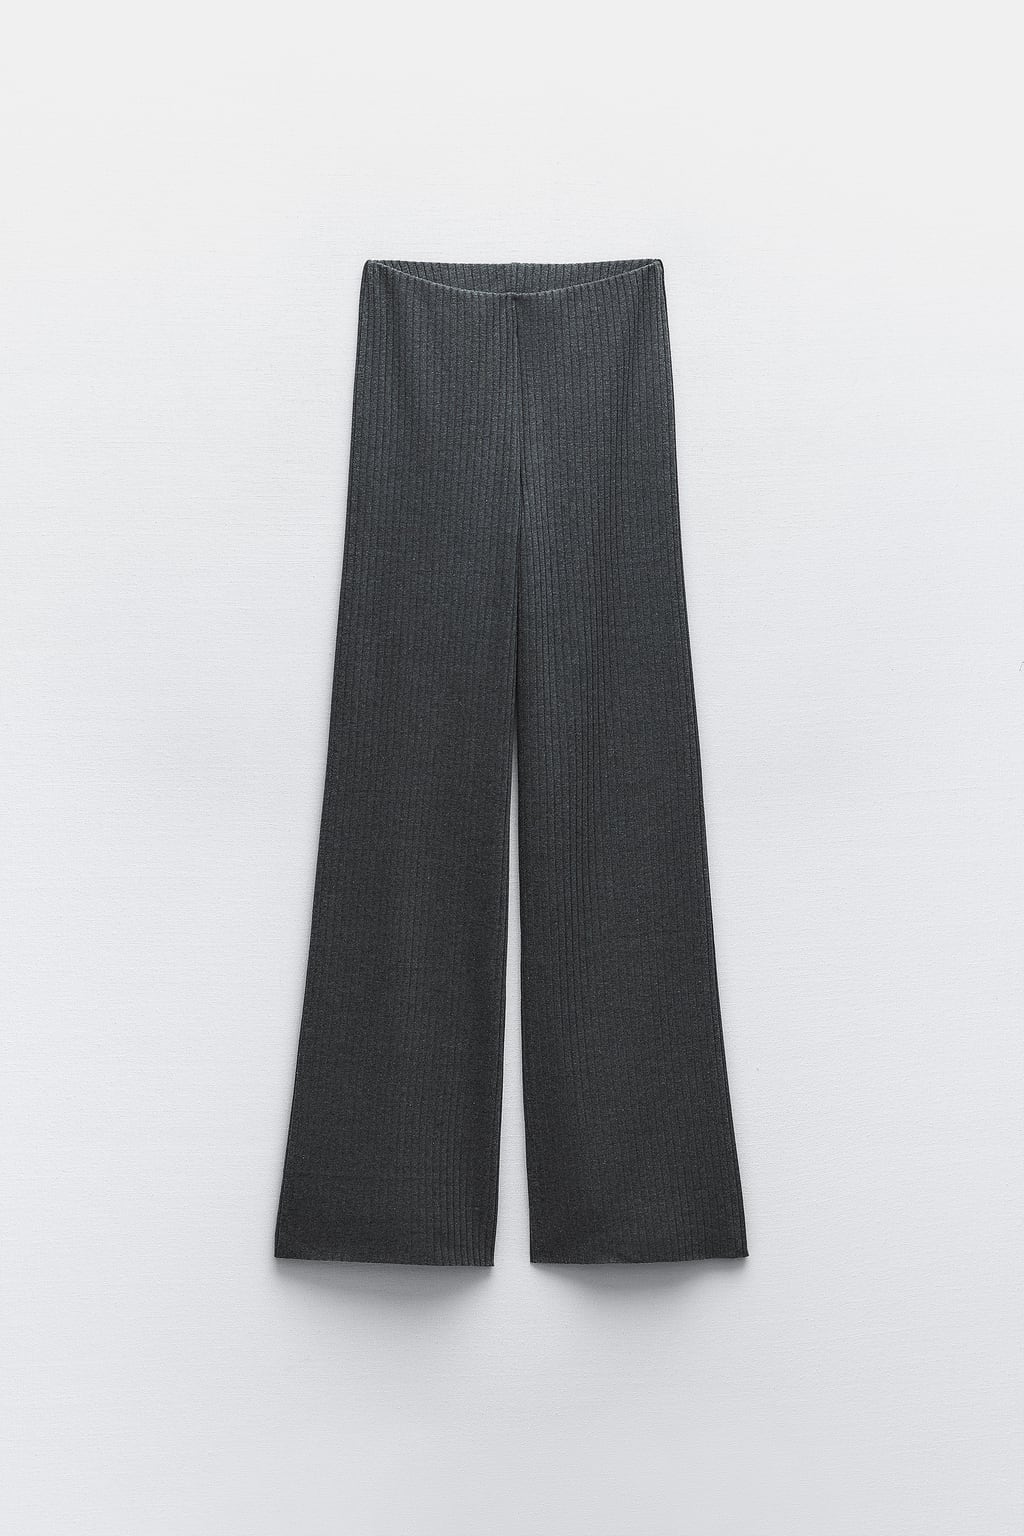 Широкие брюки в рубчик ZARA, серый мергель брюки женские прямые с завышенной талией базовые цветные непрозрачные драпированные повседневные белые брюки с широкими штанинами подхо